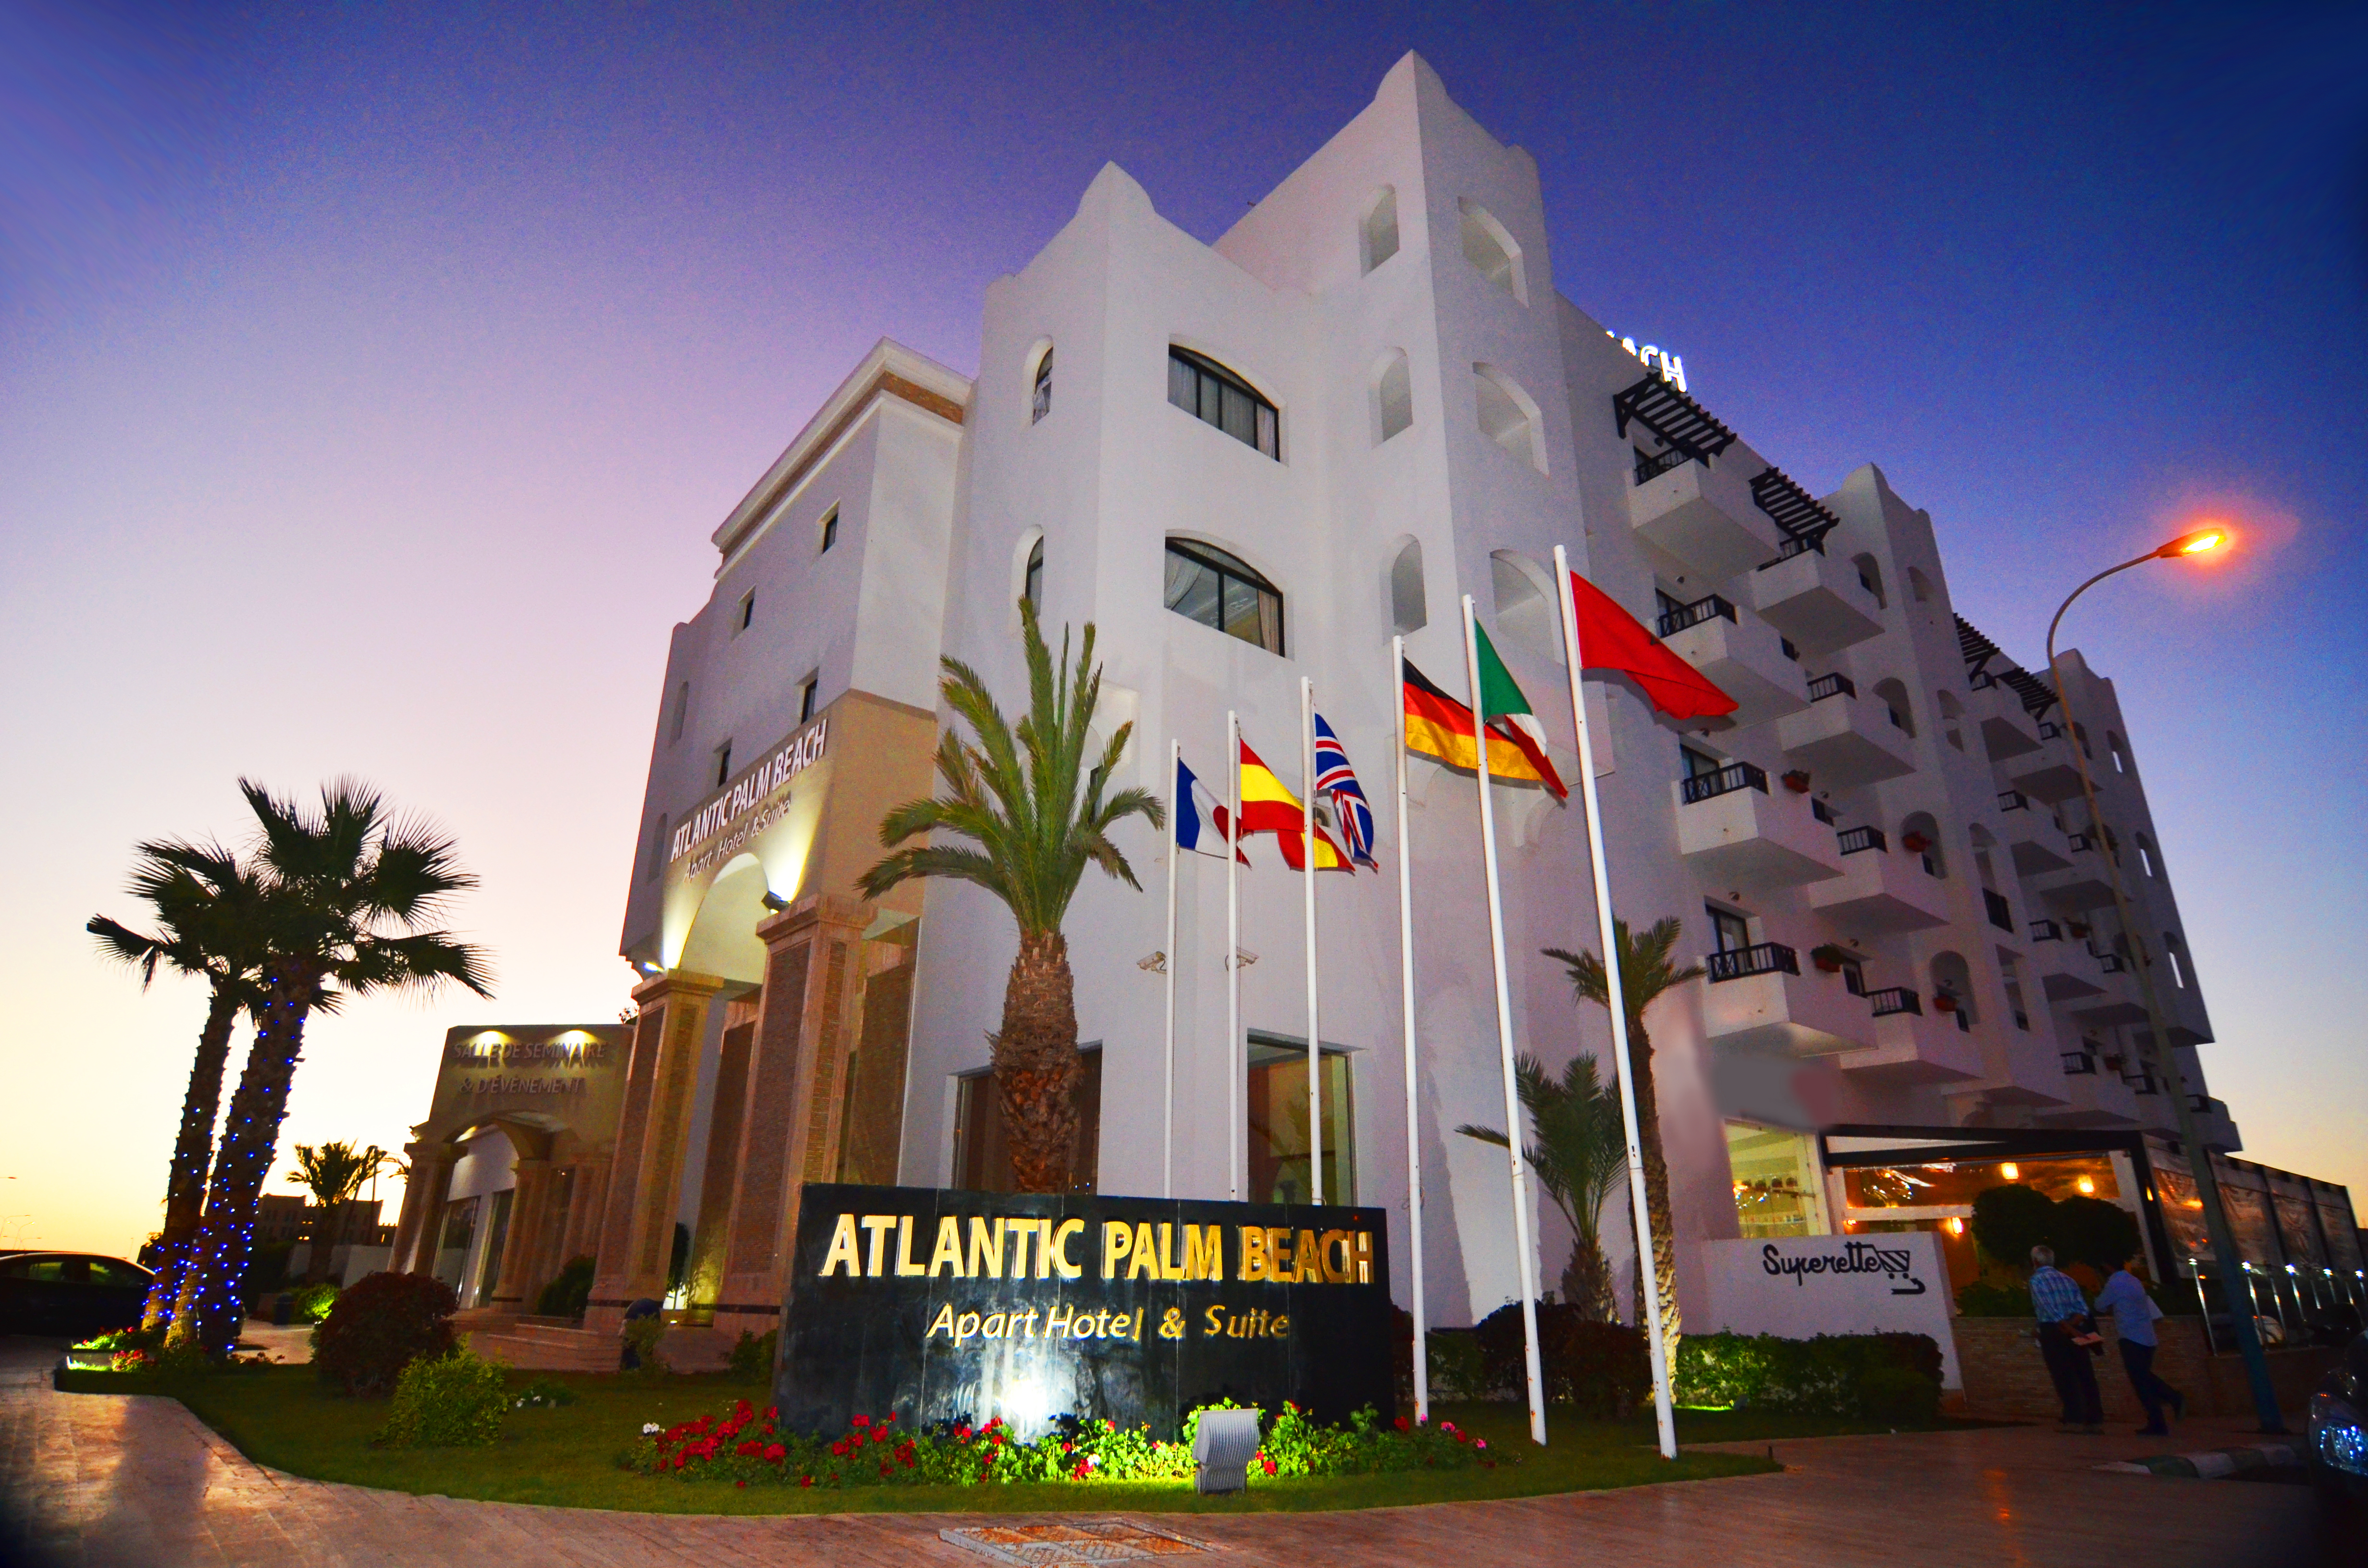 Atlantic Palm Beach